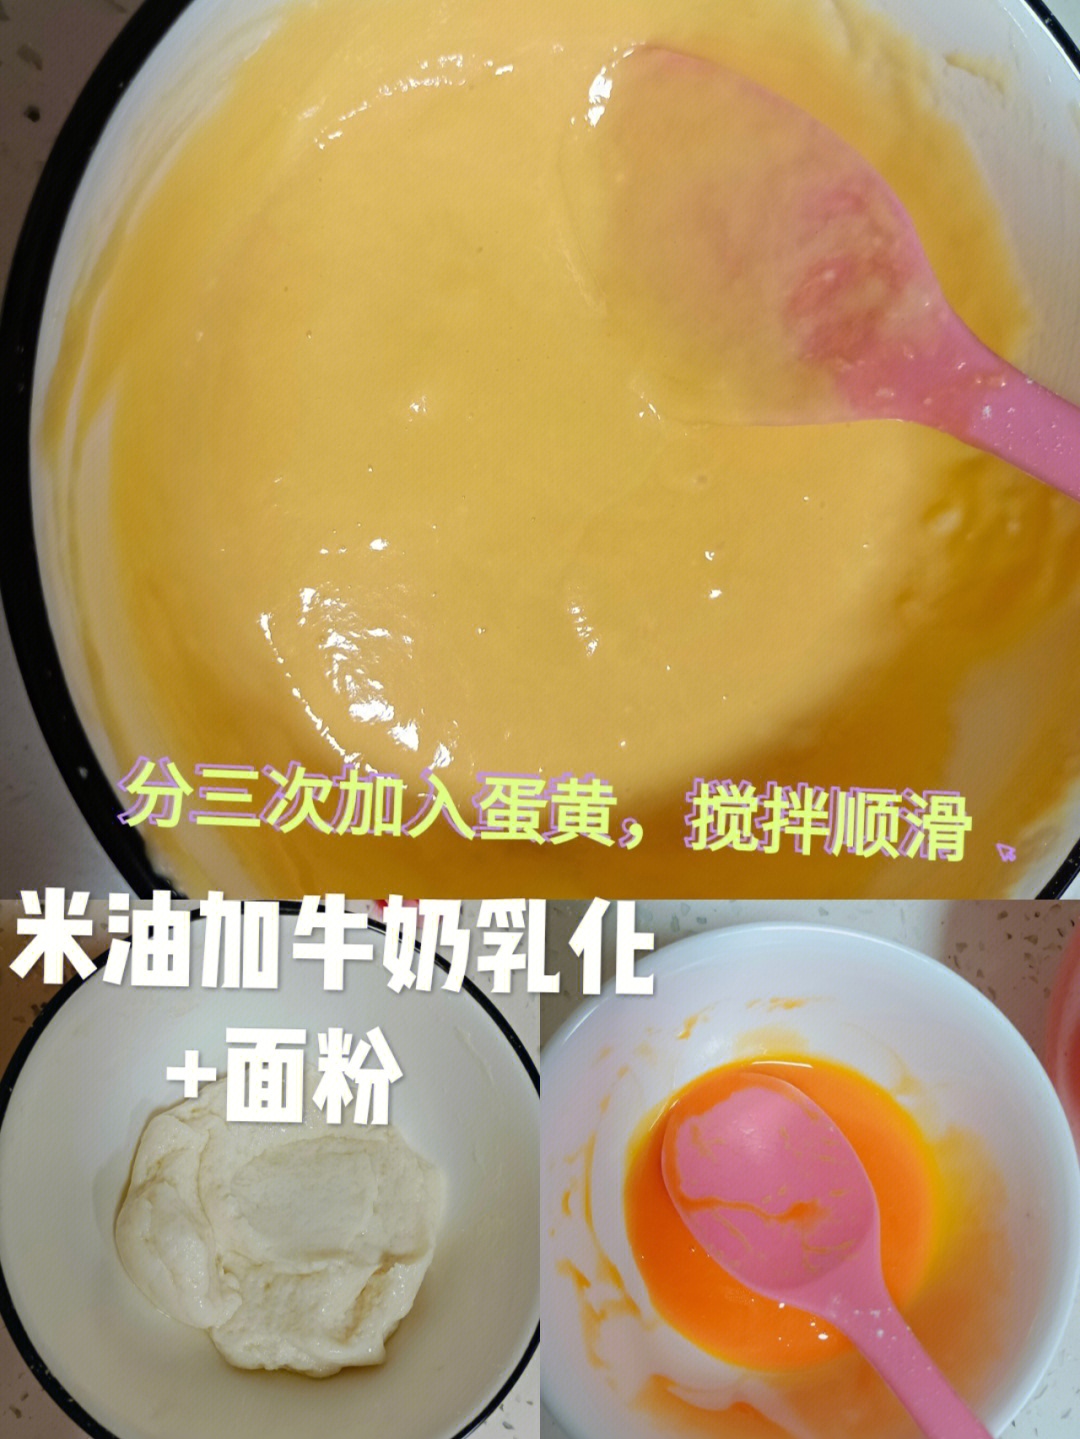 新手也能一次成功的杯子蛋糕987715准备材料:鸡蛋3个,玉米油37